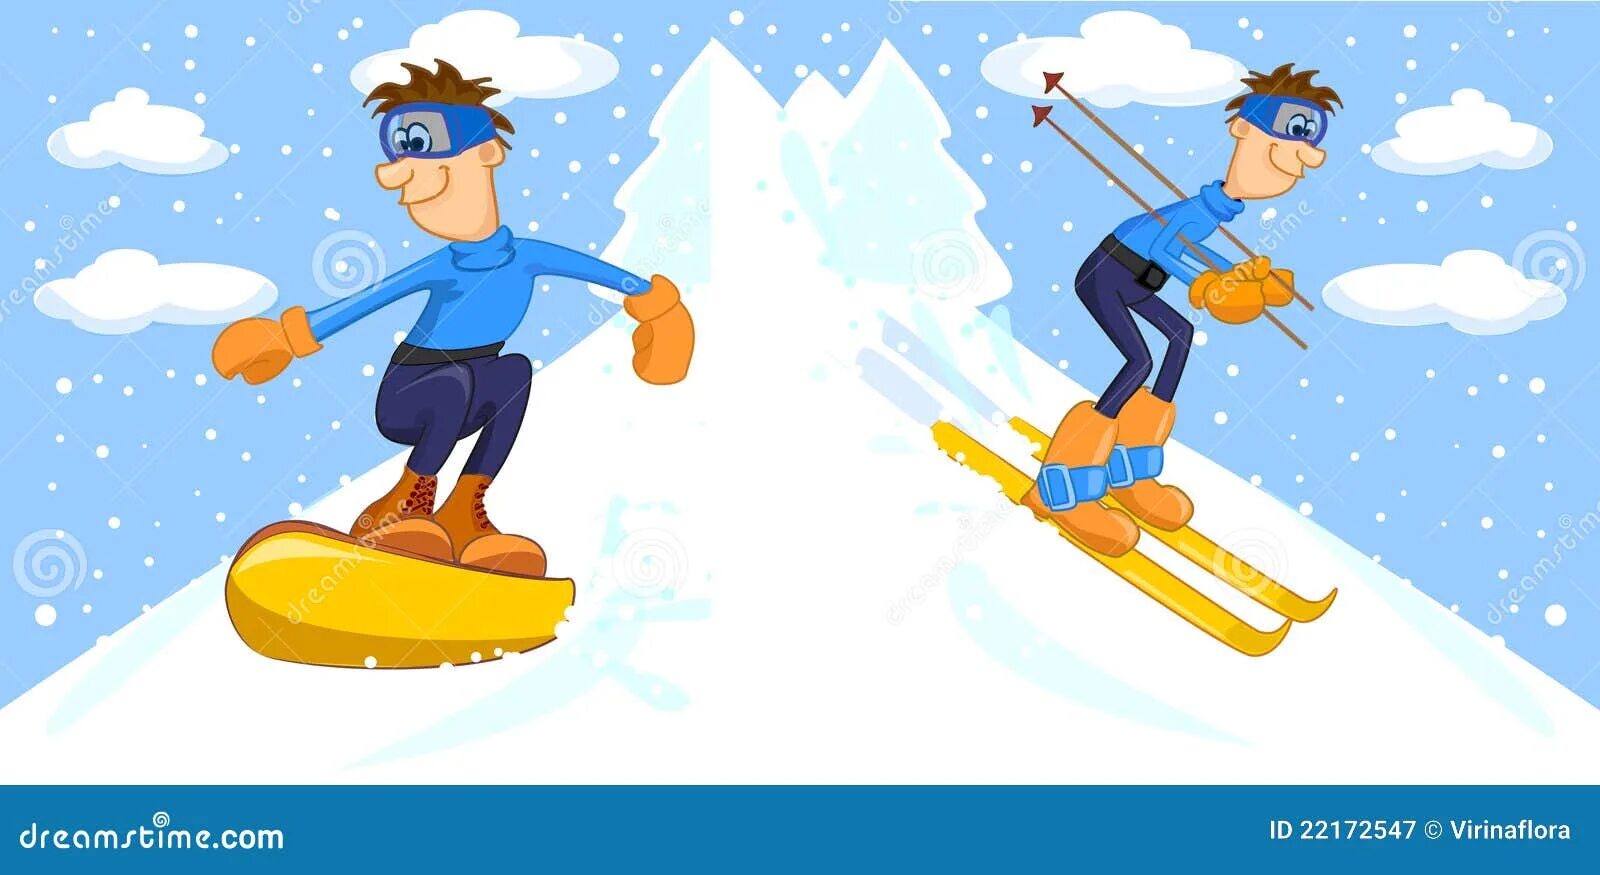 Туристу лыжнику было лень. Мальчик катается на лыжах. Мультяшка на лыжах. Сноуборд для дошкольников. Люди катаются на лыжах.